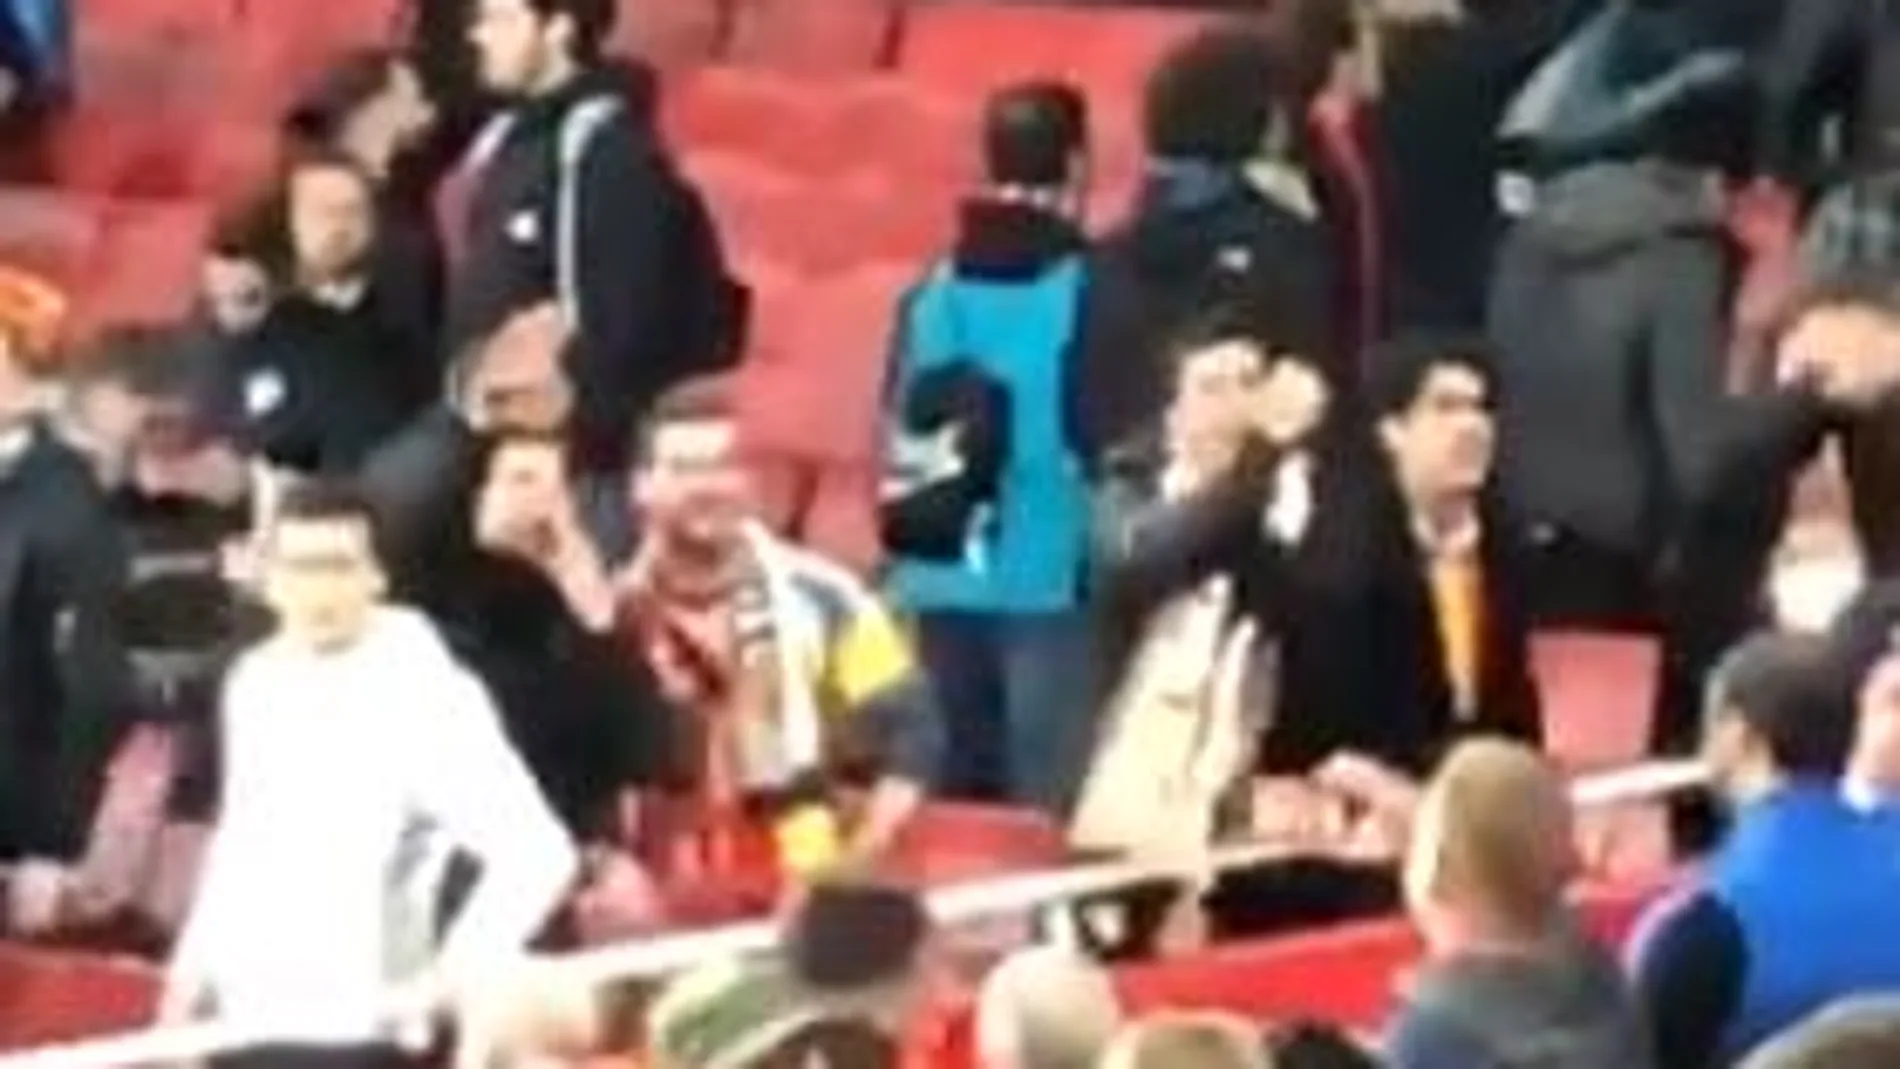 Los aficionados del Valencia hicieron gestos nazis y racistas a aficionados del Arsenal